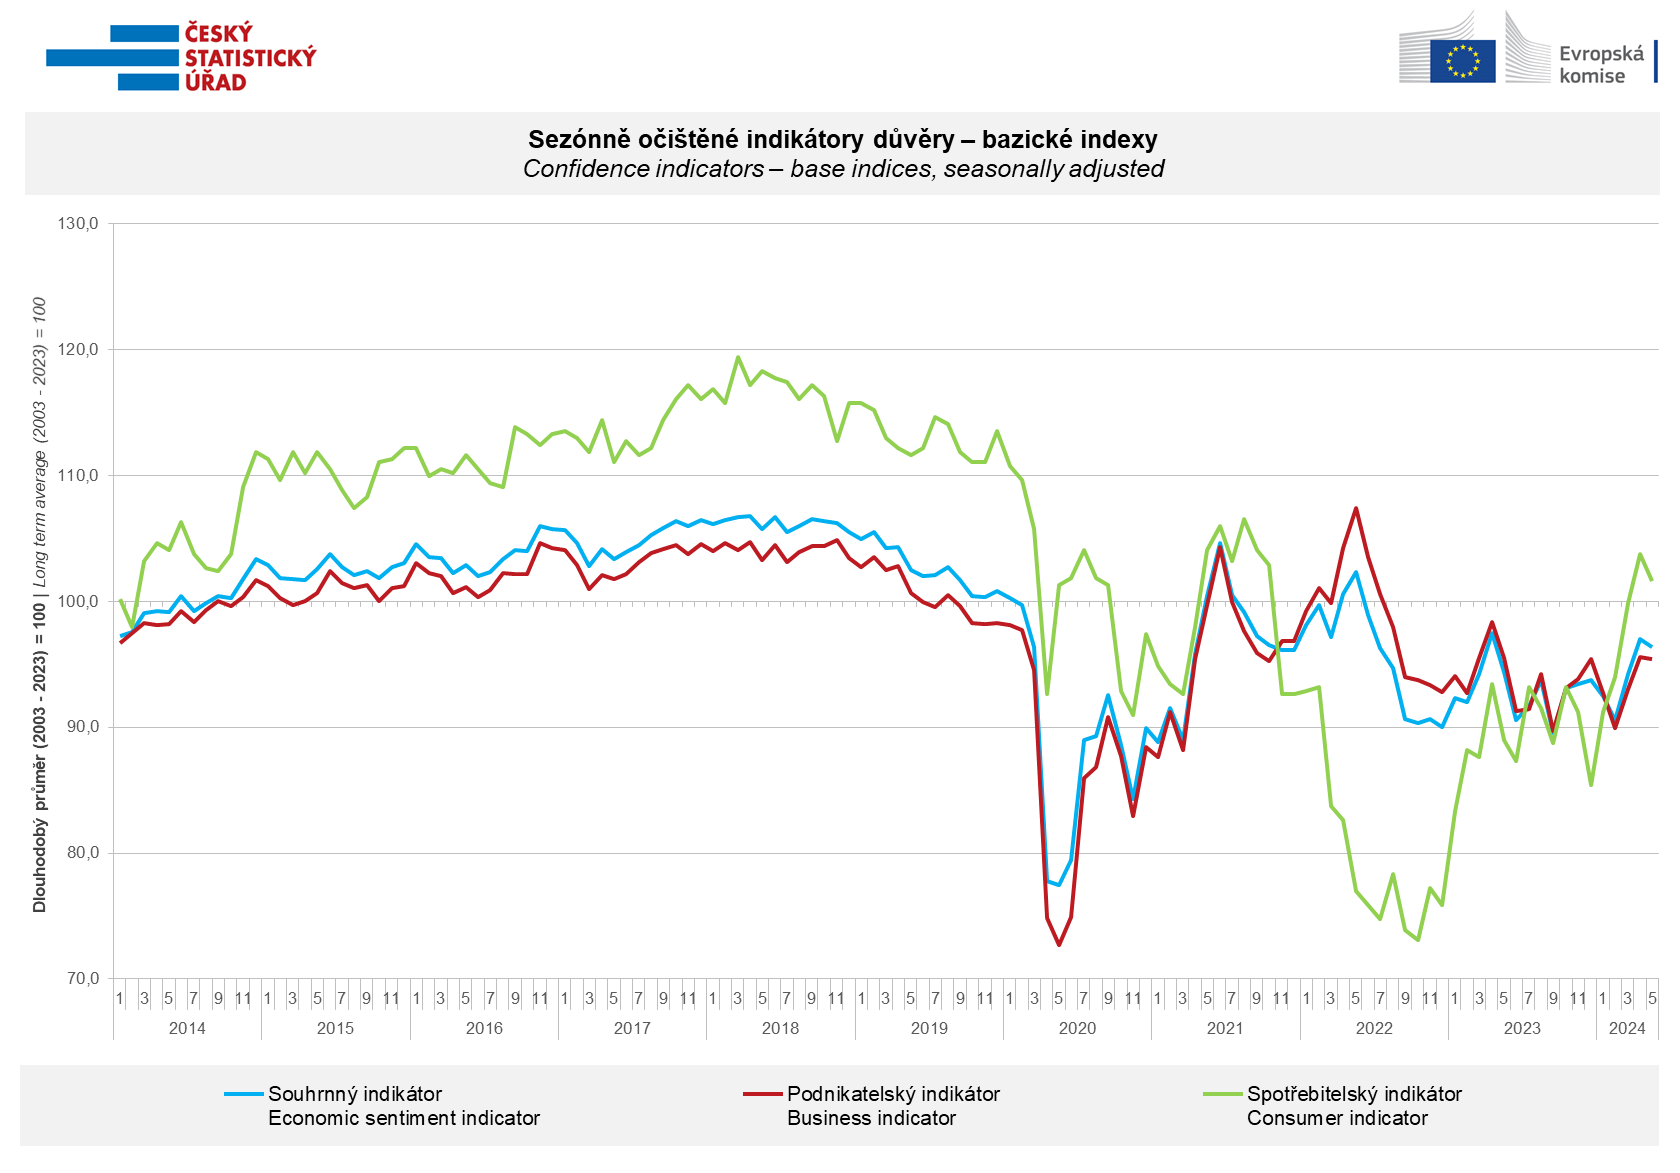 Graf - Sezónně očištěné indikátory důvěry - bazické indexy, květen 2024